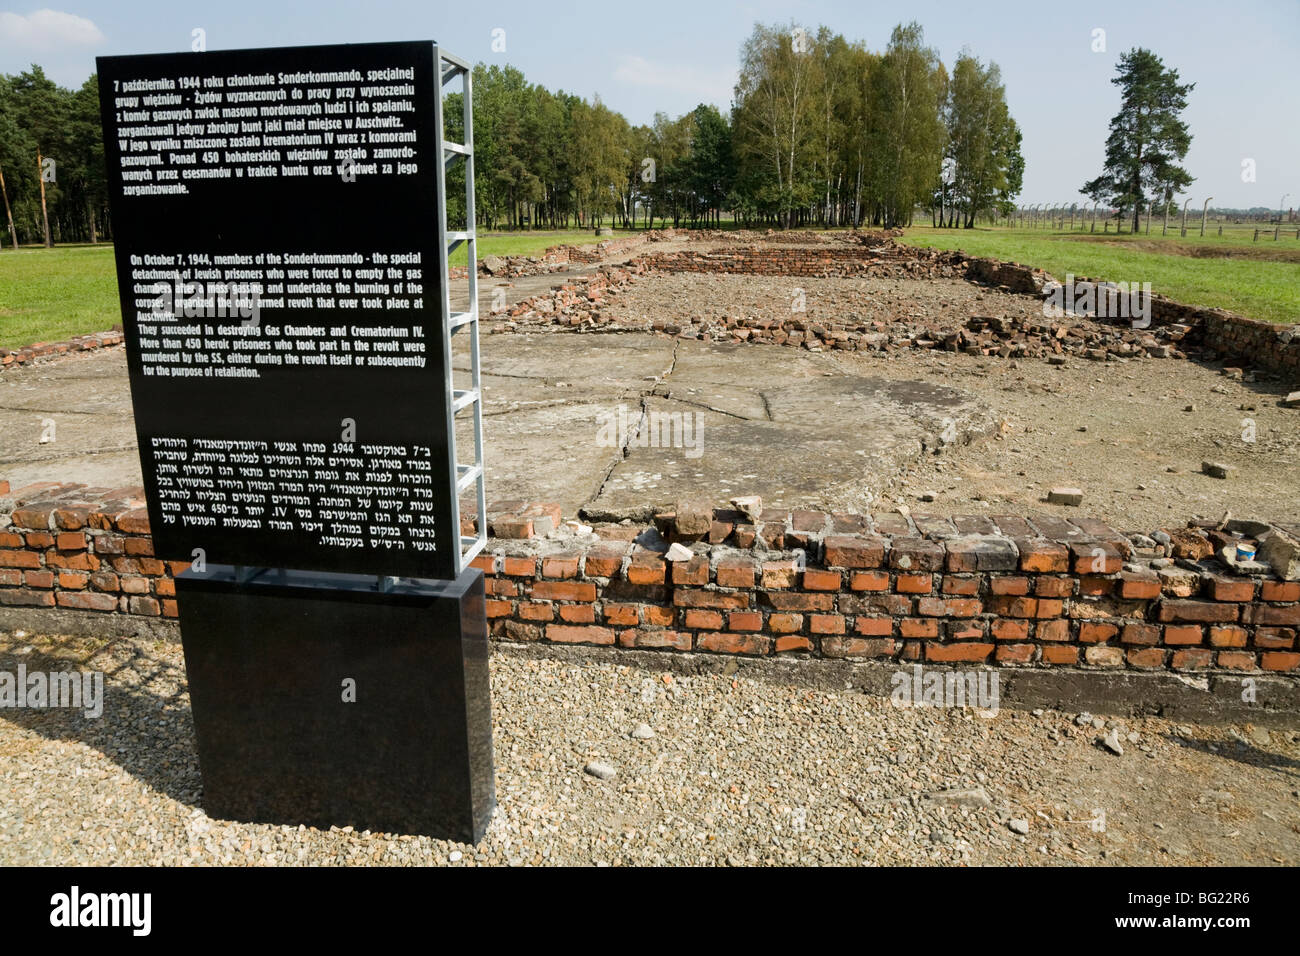 Nota informativa / segno / memorial vicino a camere a gas / forni crematori IV. Auschwitz II - Birkenau campo di concentramento nazista, Polonia Foto Stock